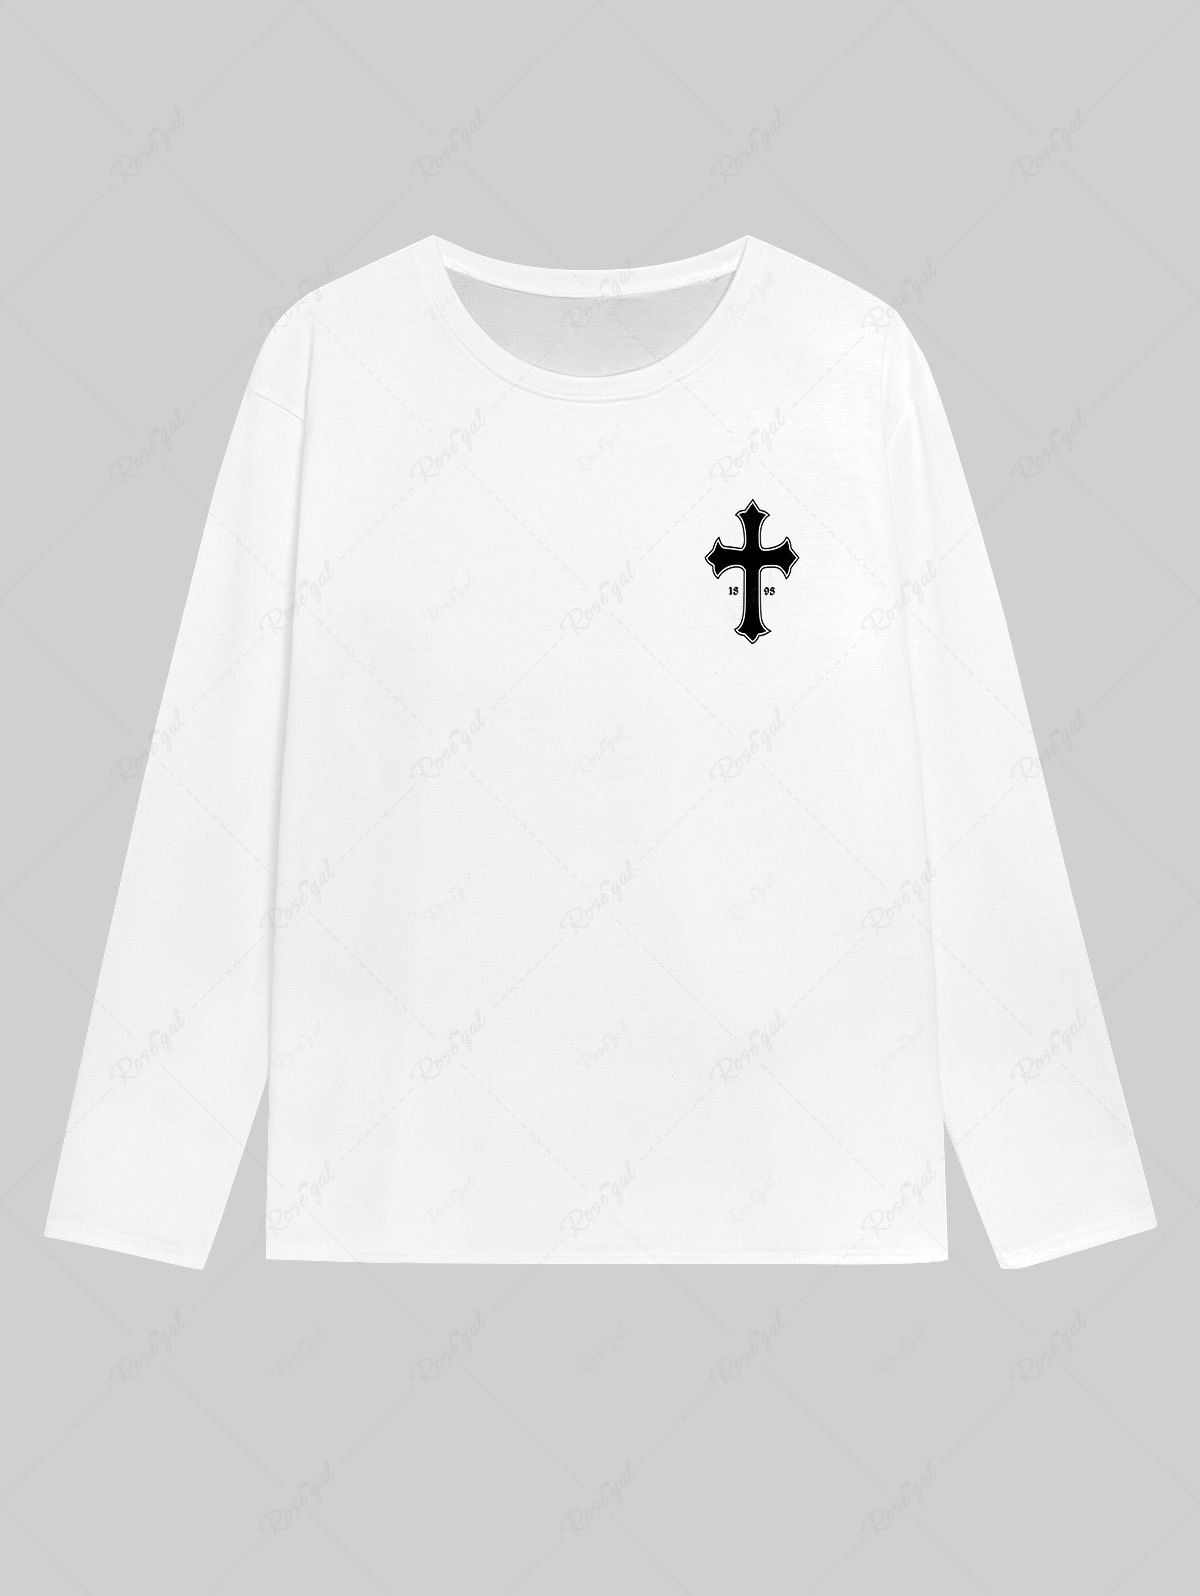 T-shirt Homme Gothique Imprimé Lettre et Croix Blanc S